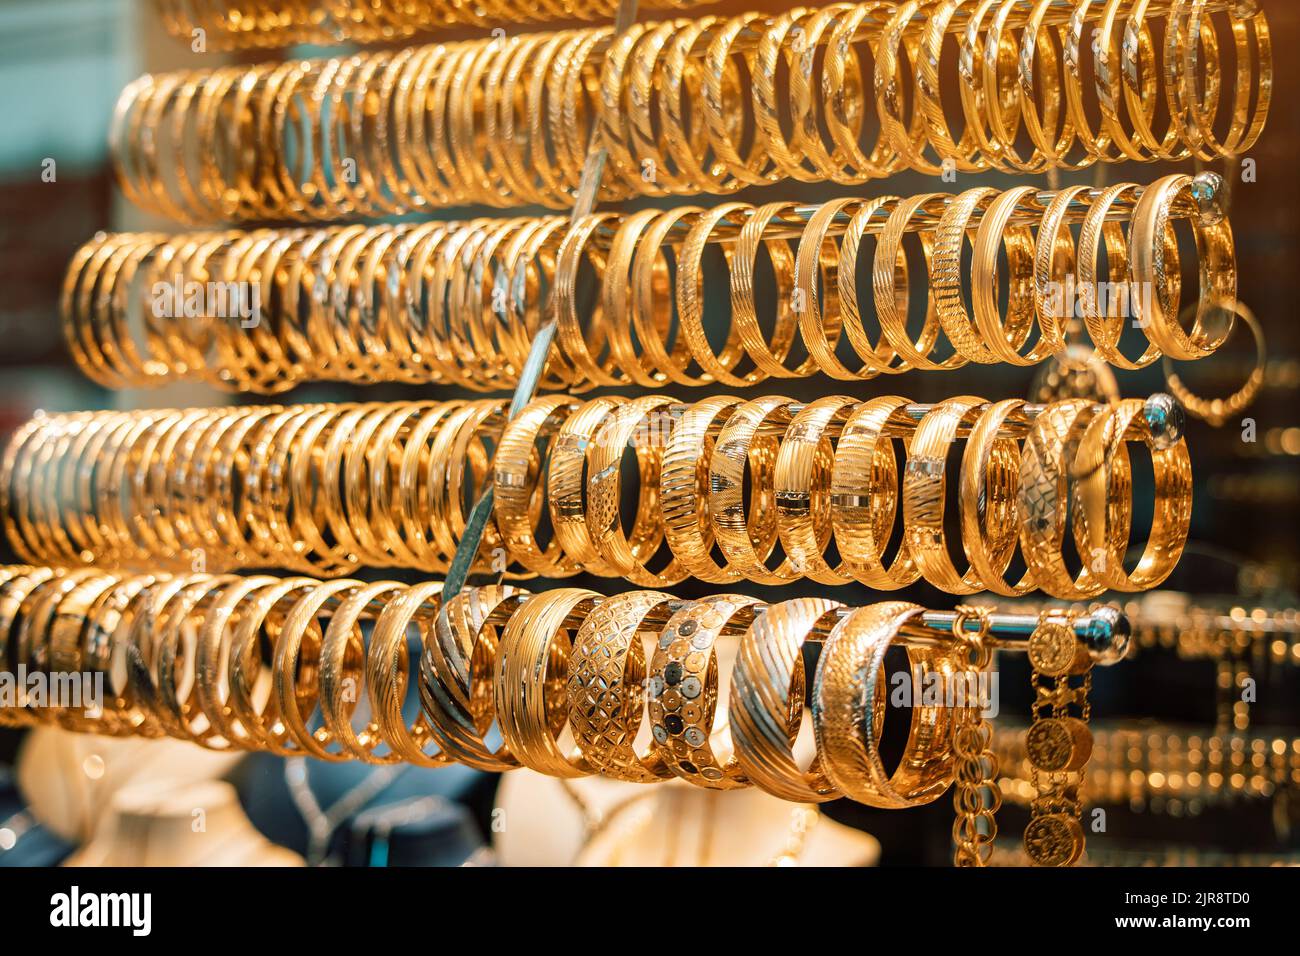 Ein Juweliergeschäft mit goldenem Schmuck, Armbändern und Accessoires. Das Konzept der Investitionen und Einsparungen mit Gold. Stockfoto